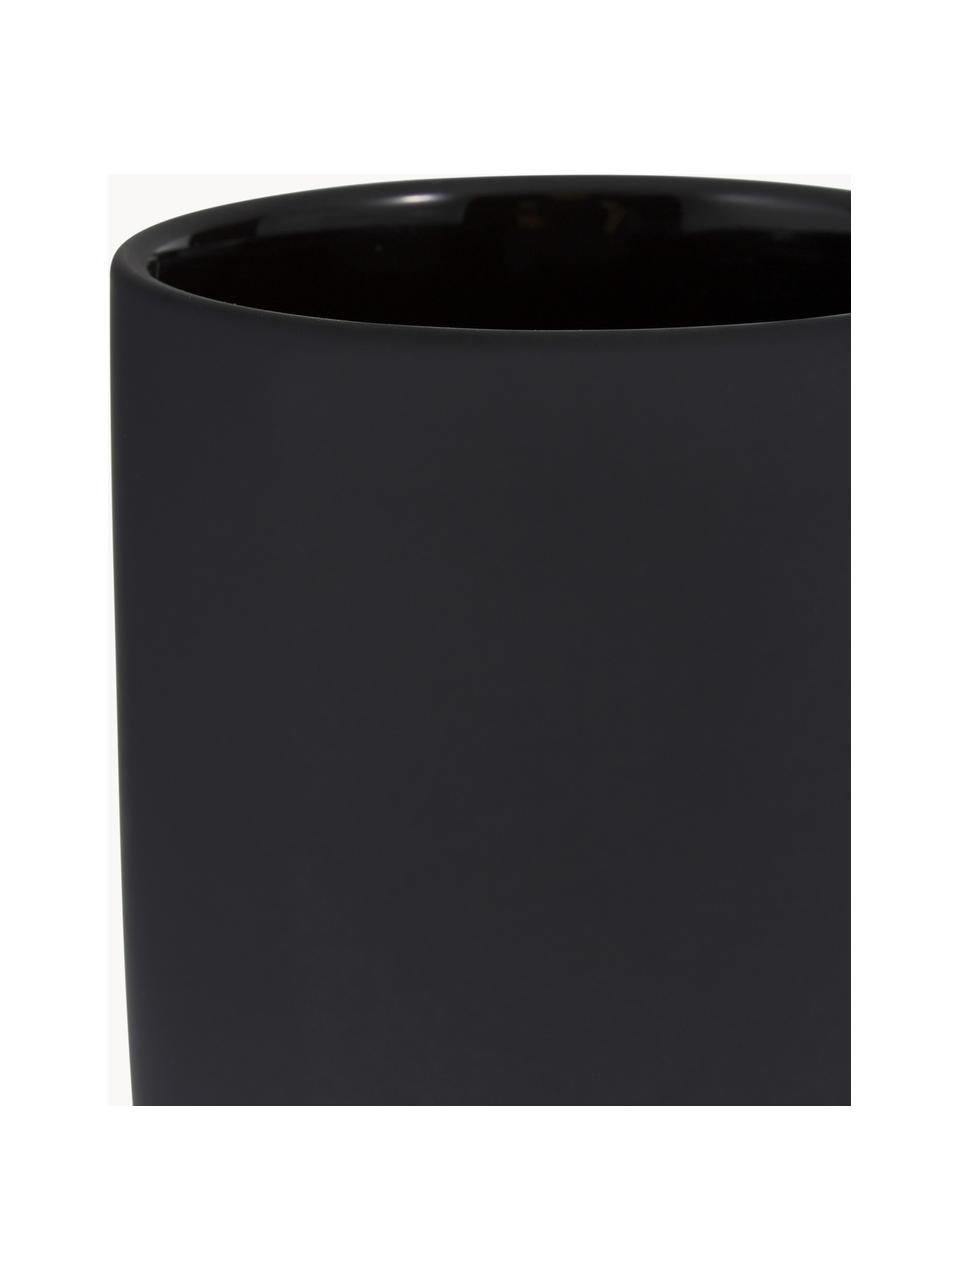 Kubek na szczoteczki z kamionki Ume, Ceramika pokryta miękką w dotyku powłoką (tworzywo sztuczne), Czarny, Ø 8 x W 10 cm